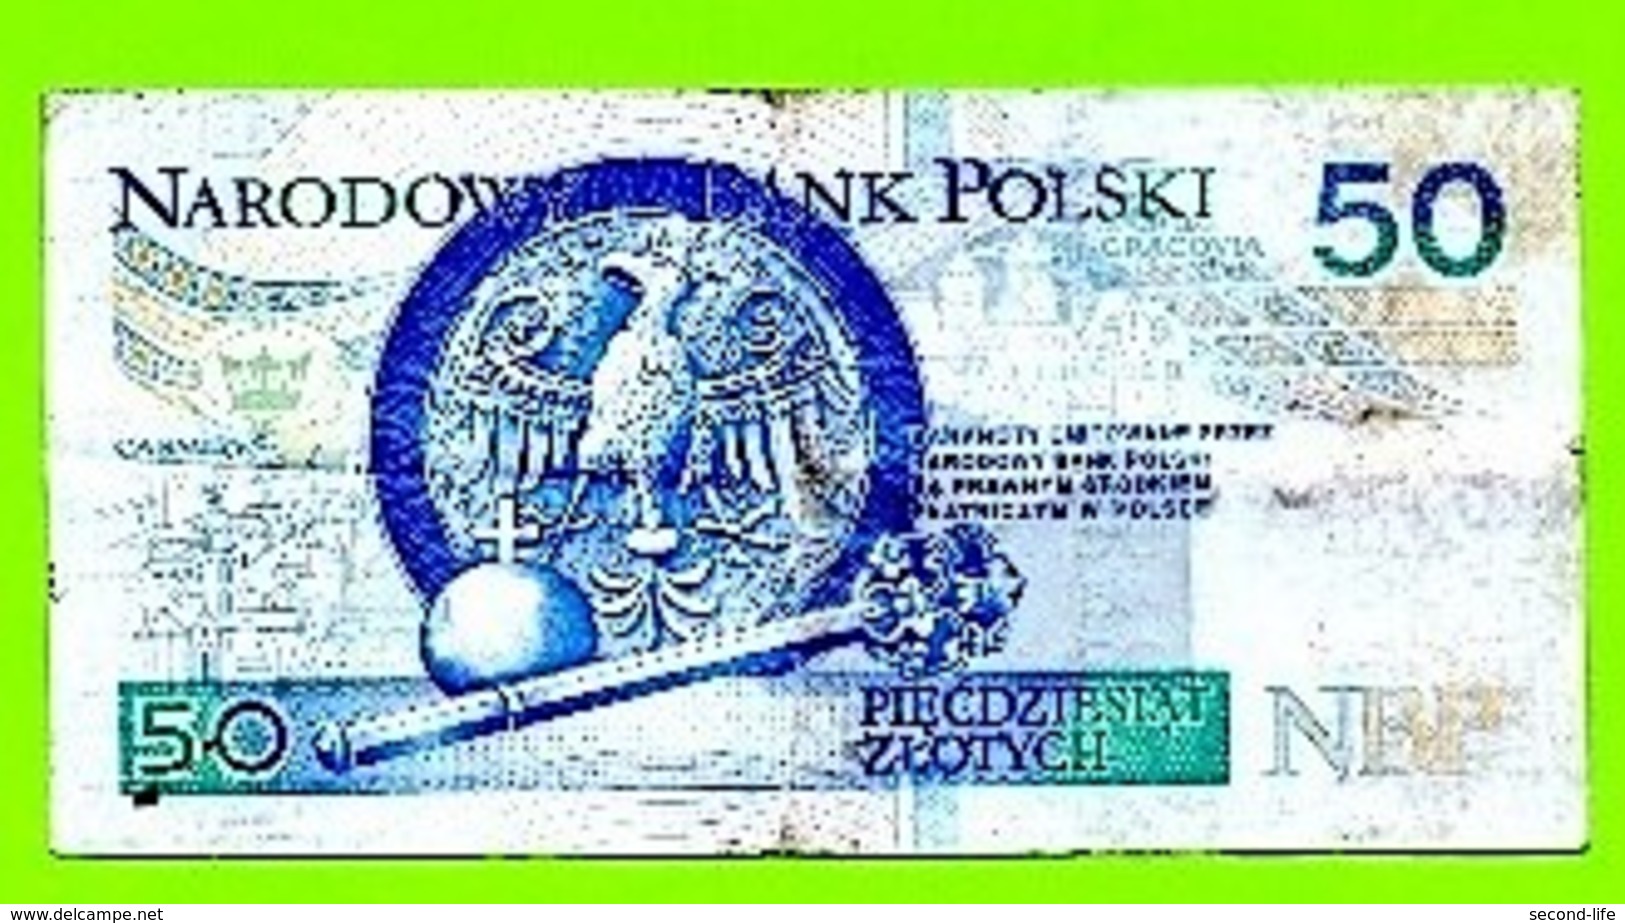 Narodowy Bank Polski. 50 Zlotych. Polen. - Polen